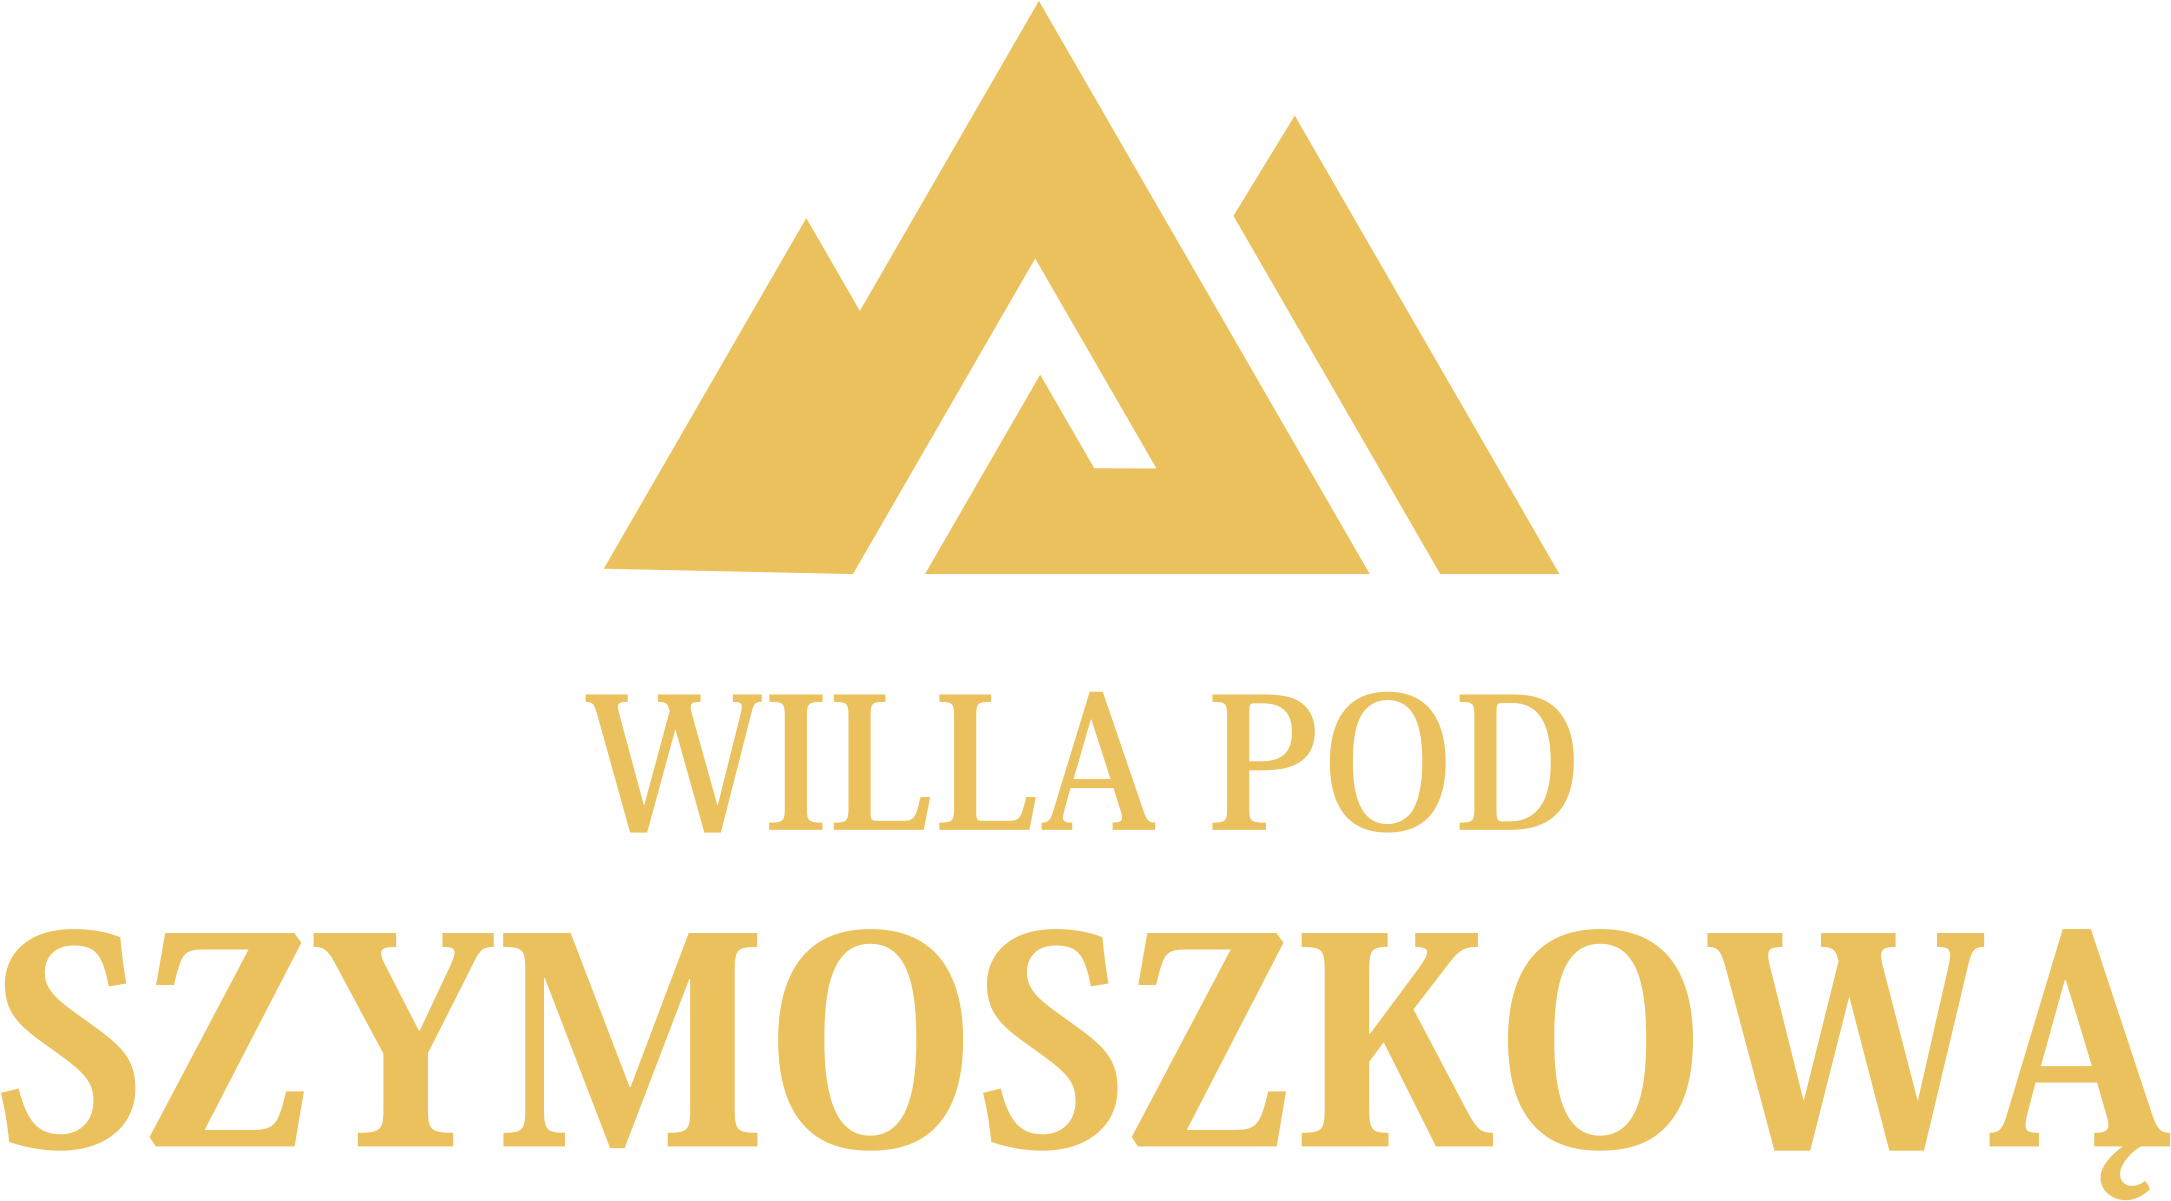 szymoszkowa-logo 2019zlote